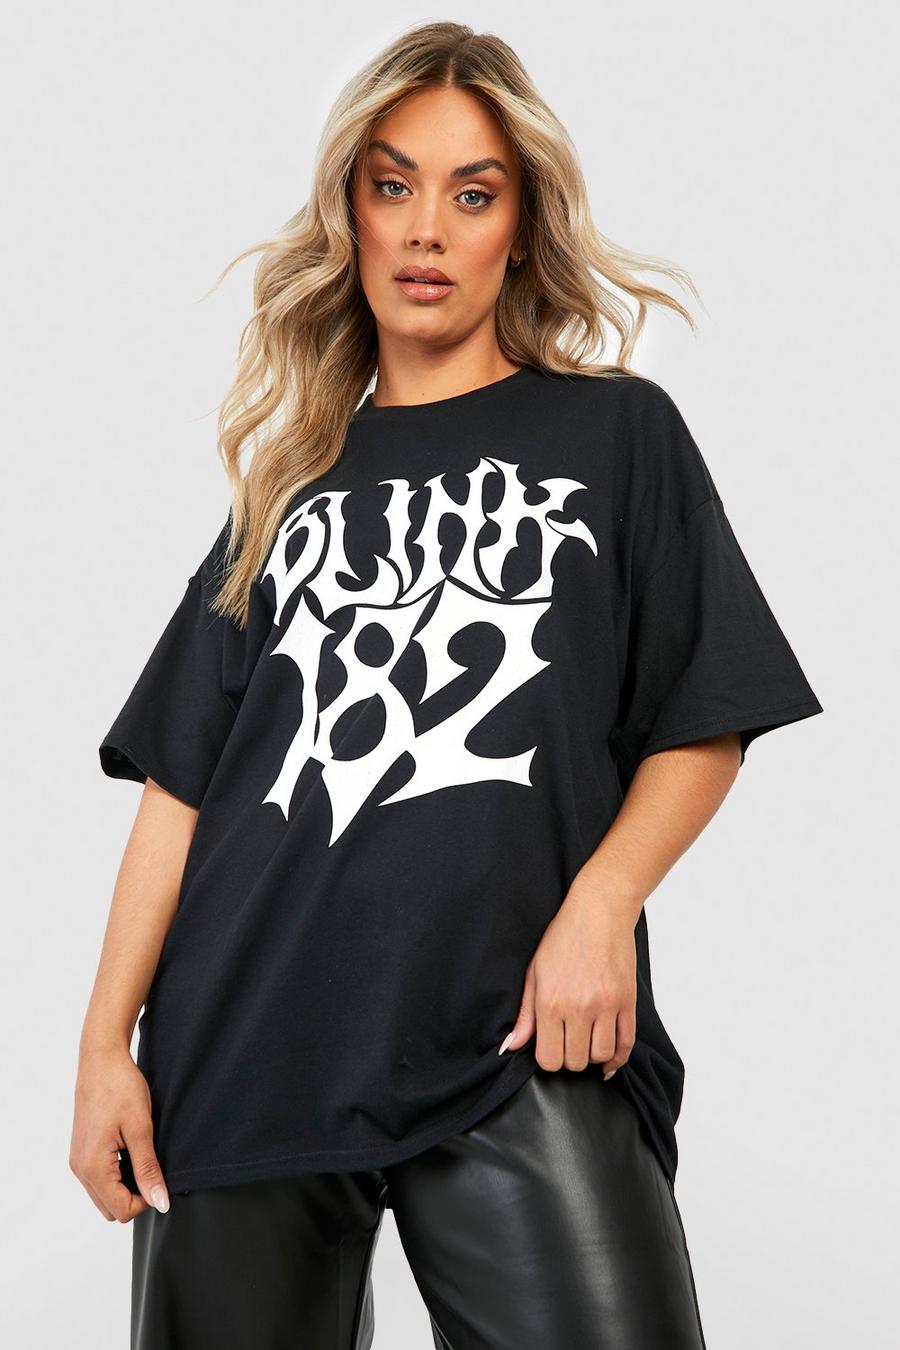 Black schwarz Plus Oversized Blink 182 License T-shirt